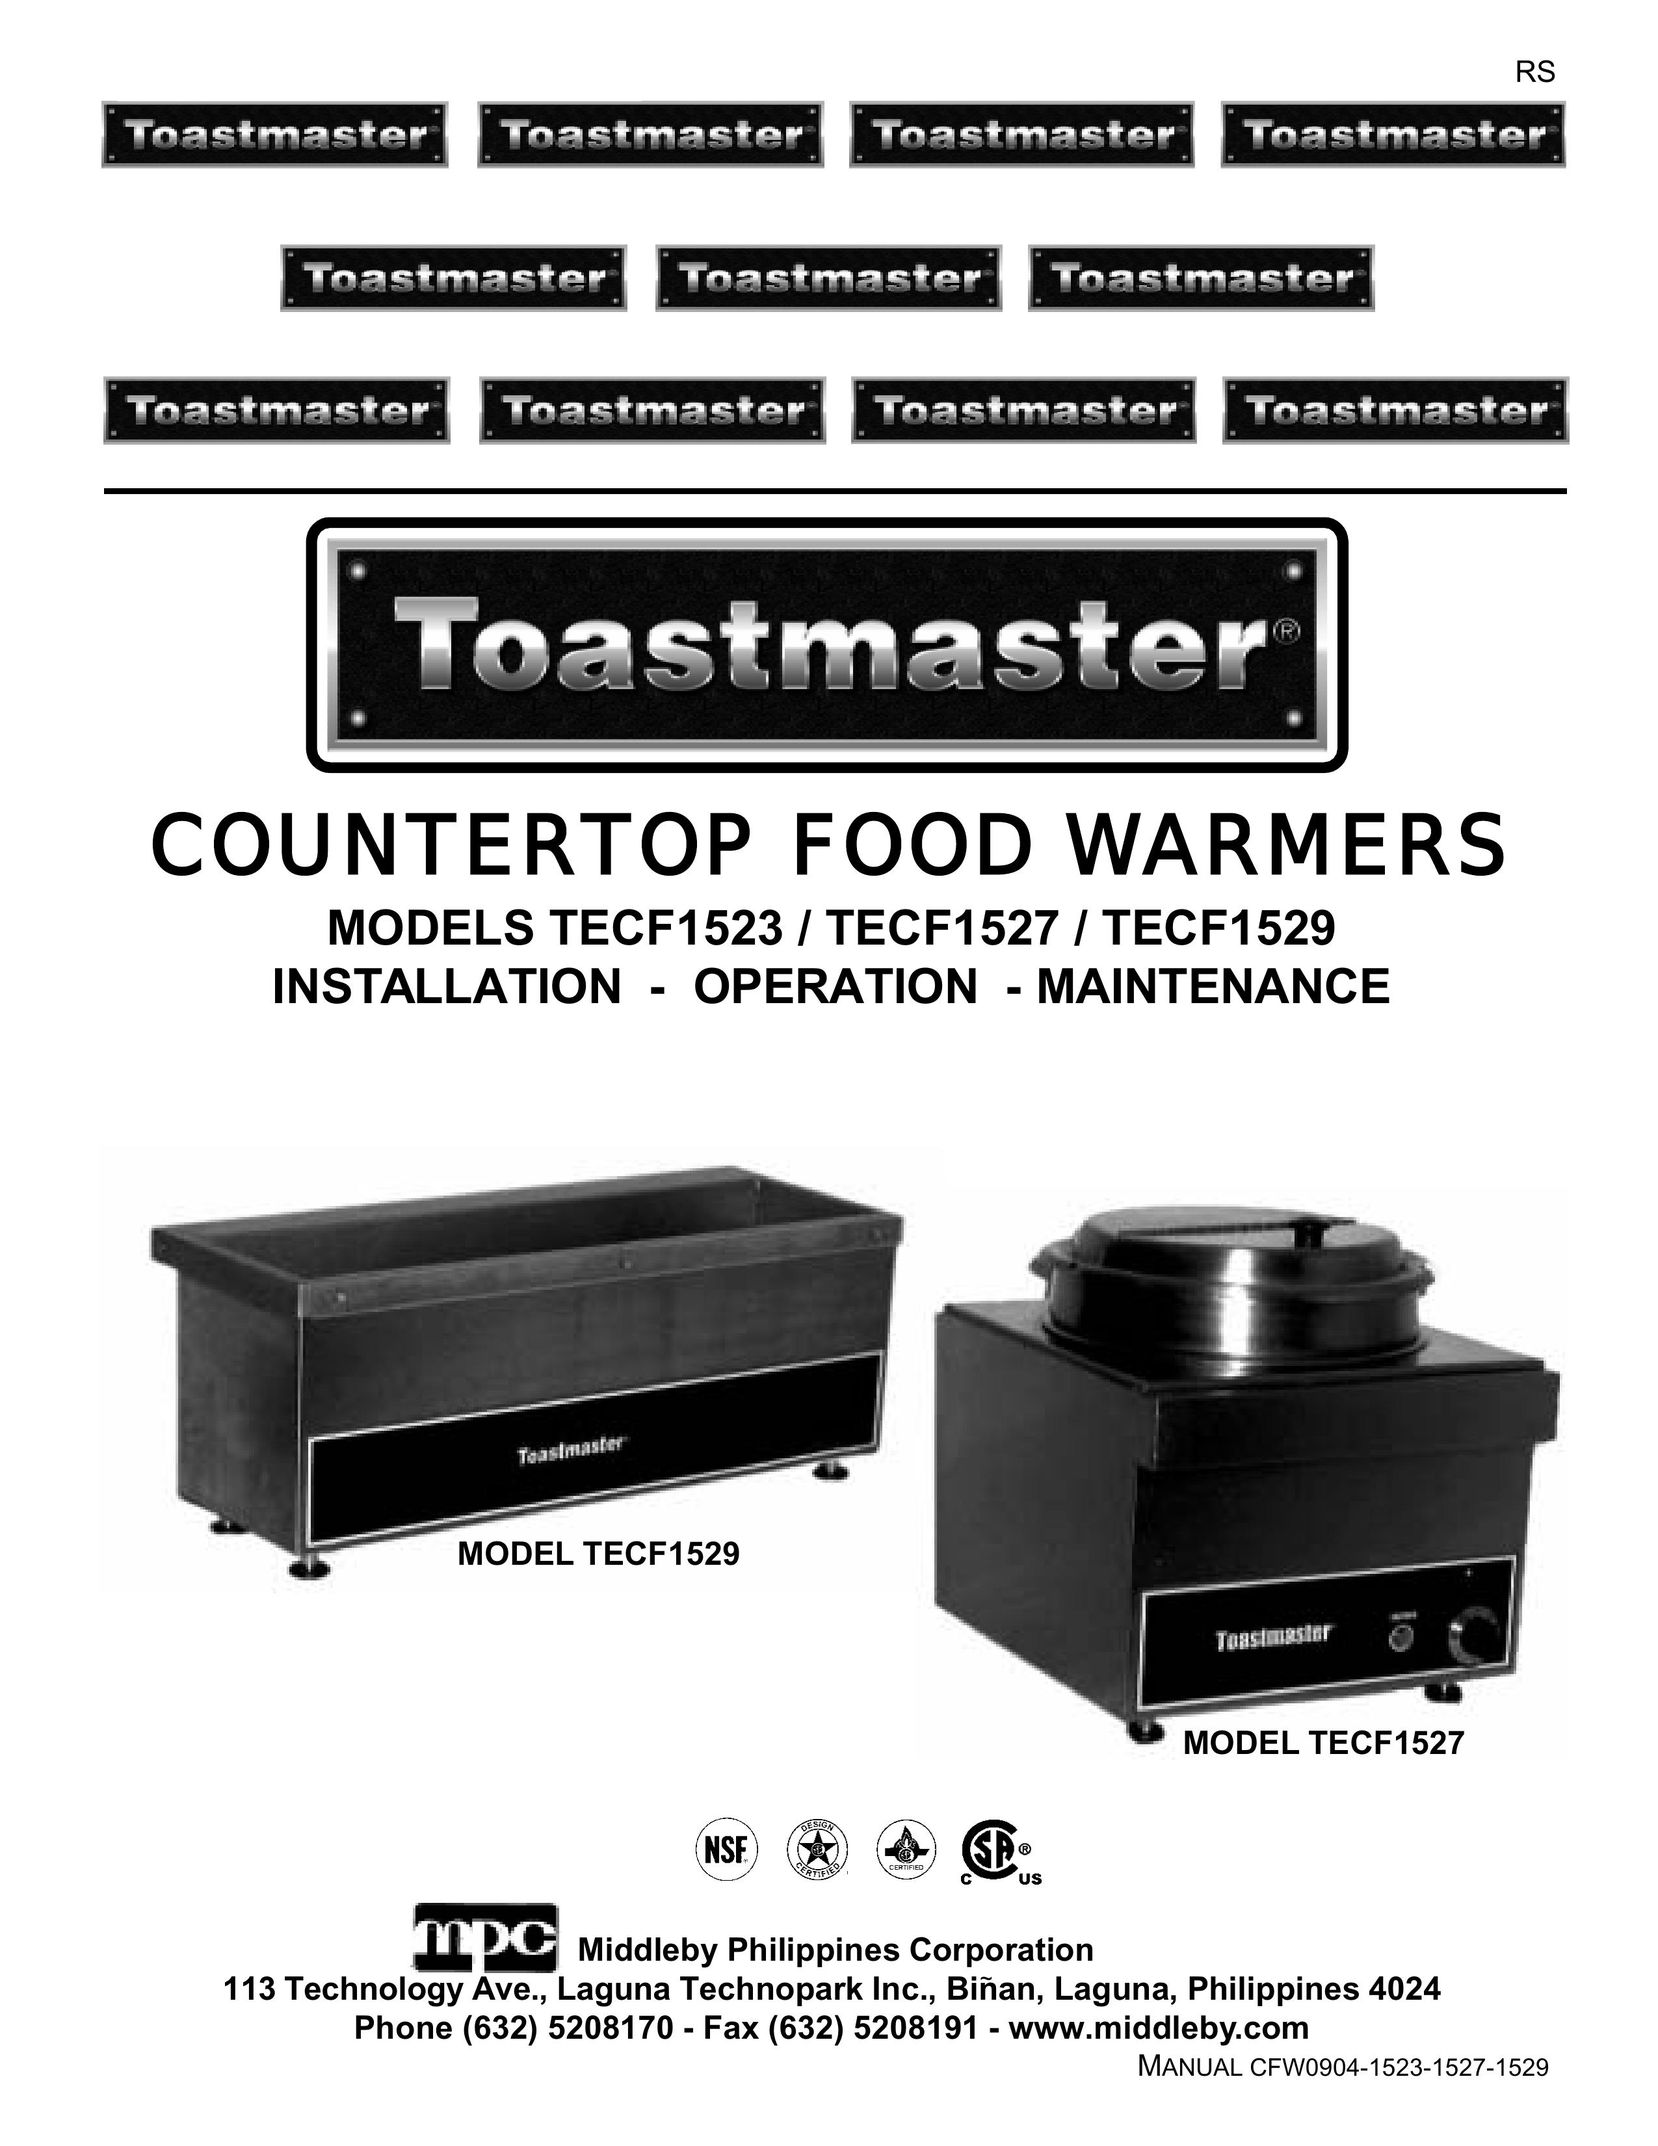 Toastmaster TECF1529 Food Warmer User Manual